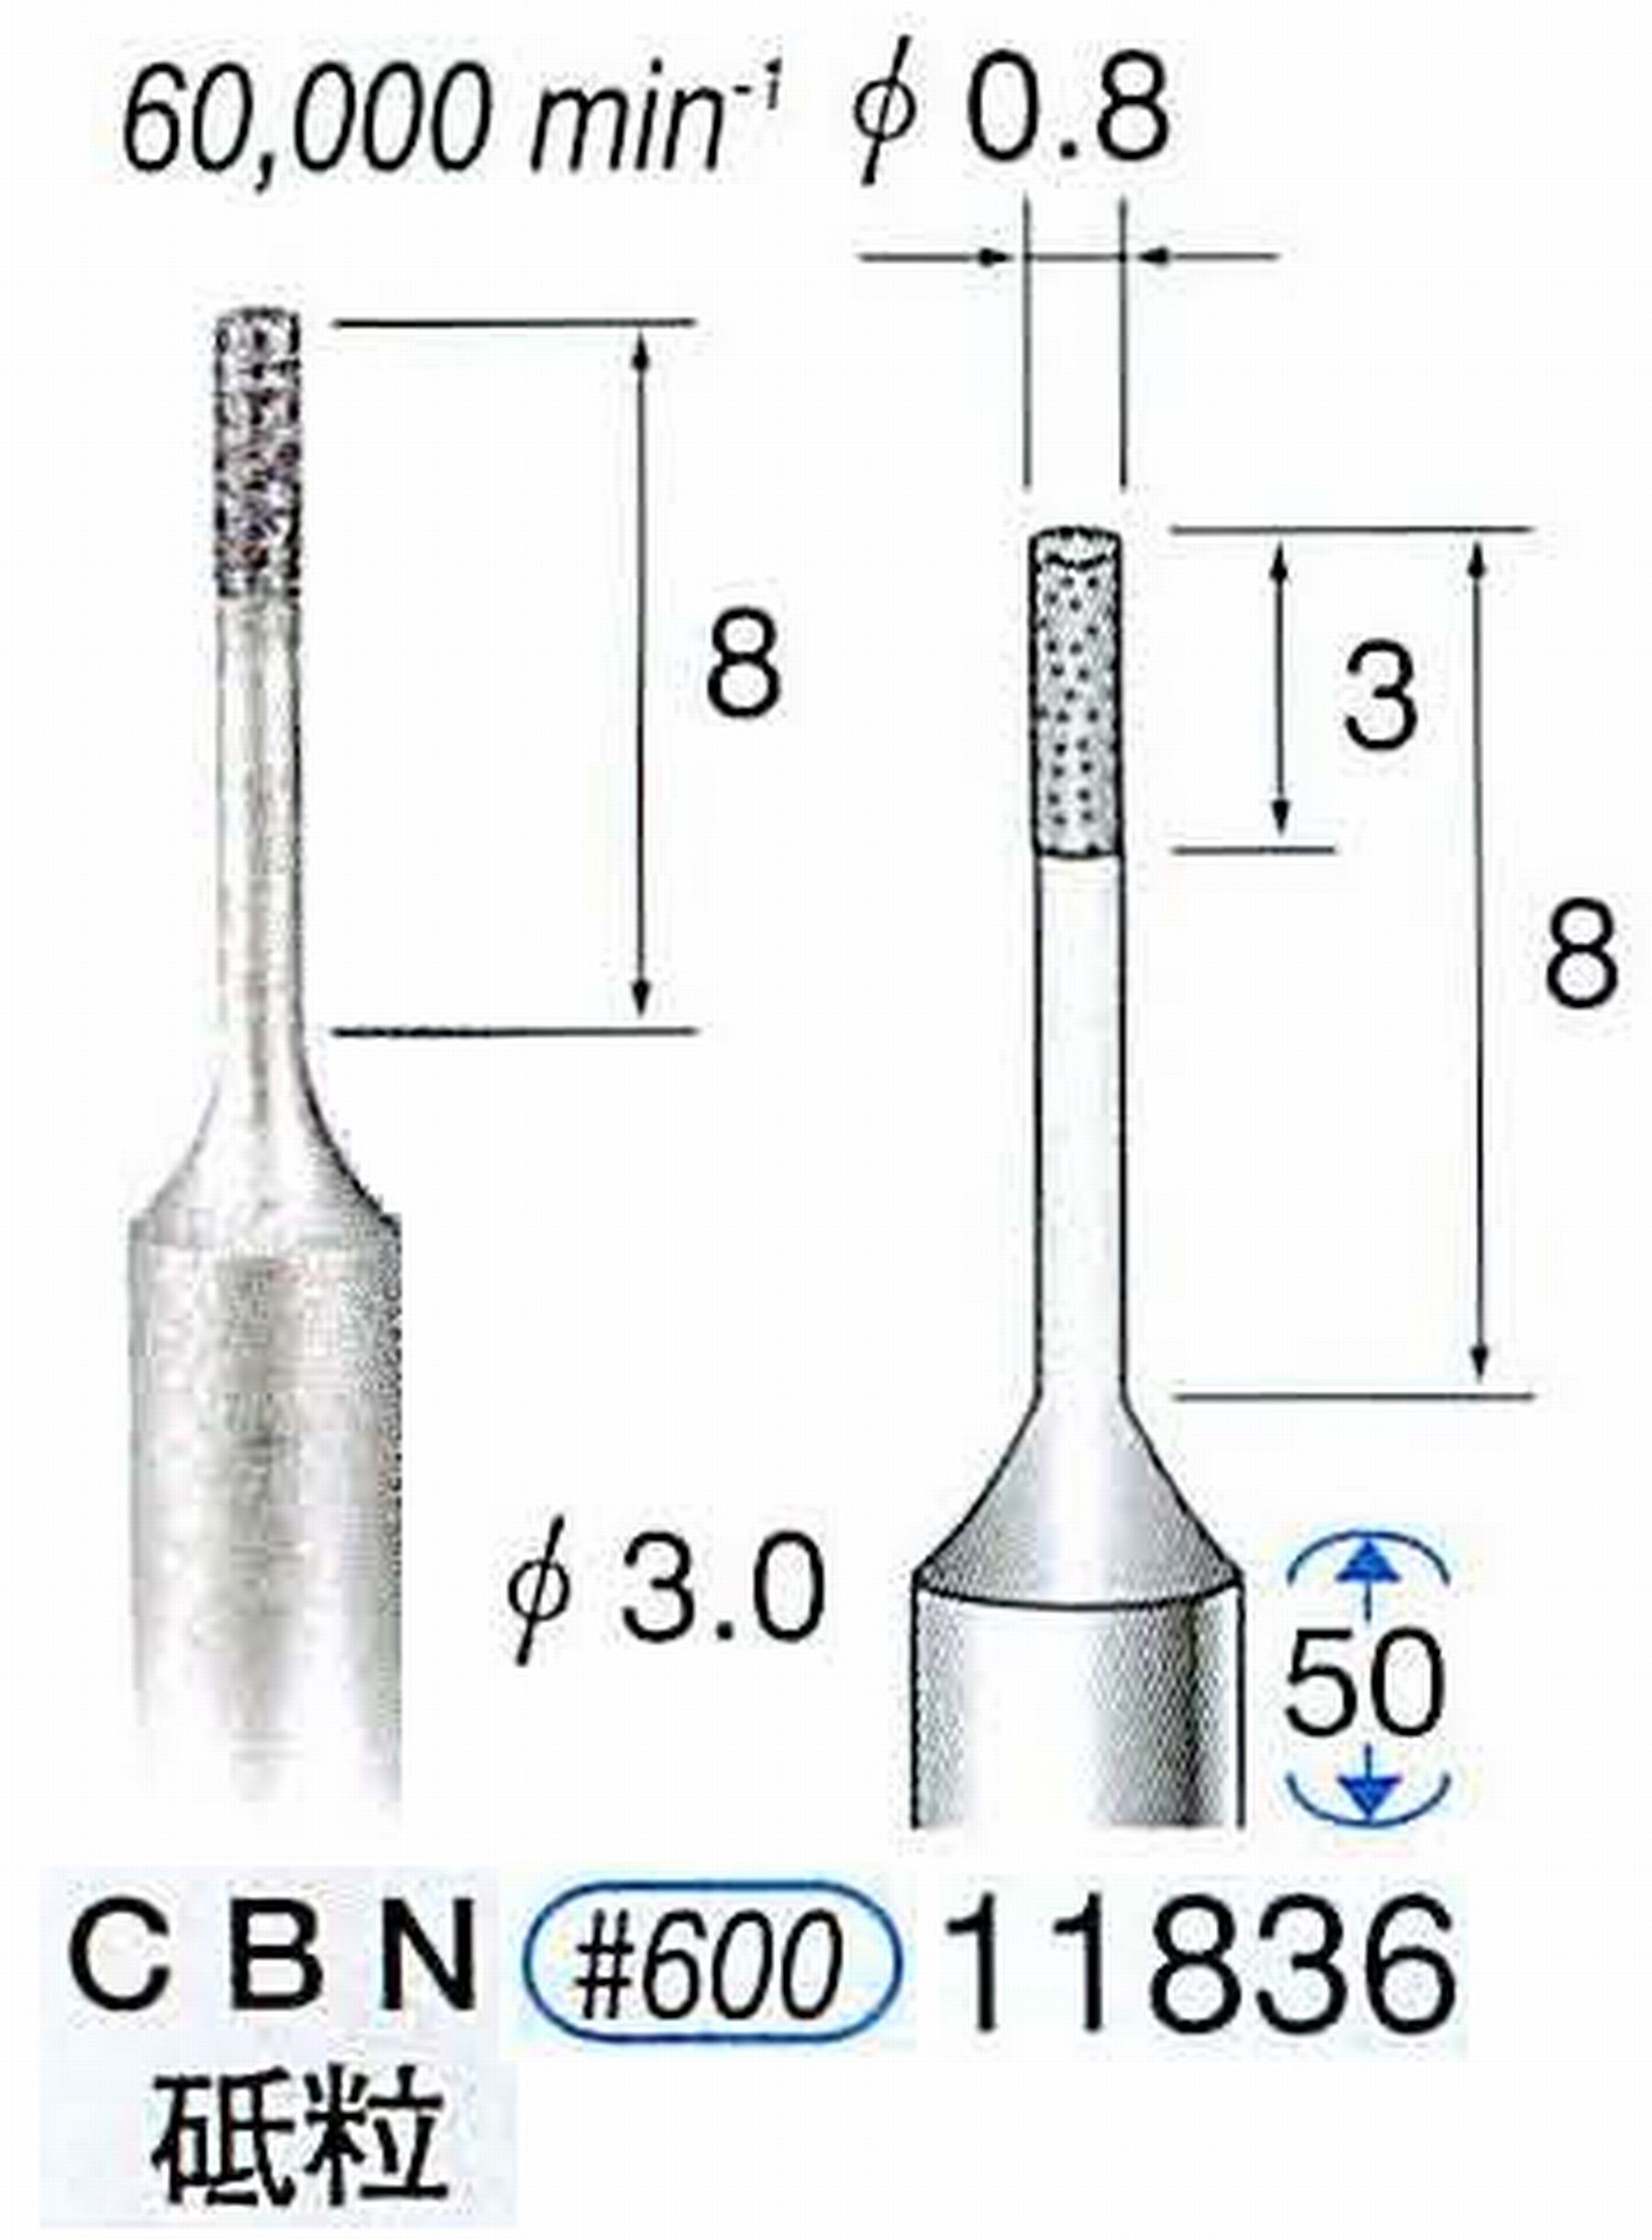 ナカニシ/NAKANISHI SP電着CBNバー CBN砥粒 軸径(シャンク)φ3.0mm 11836